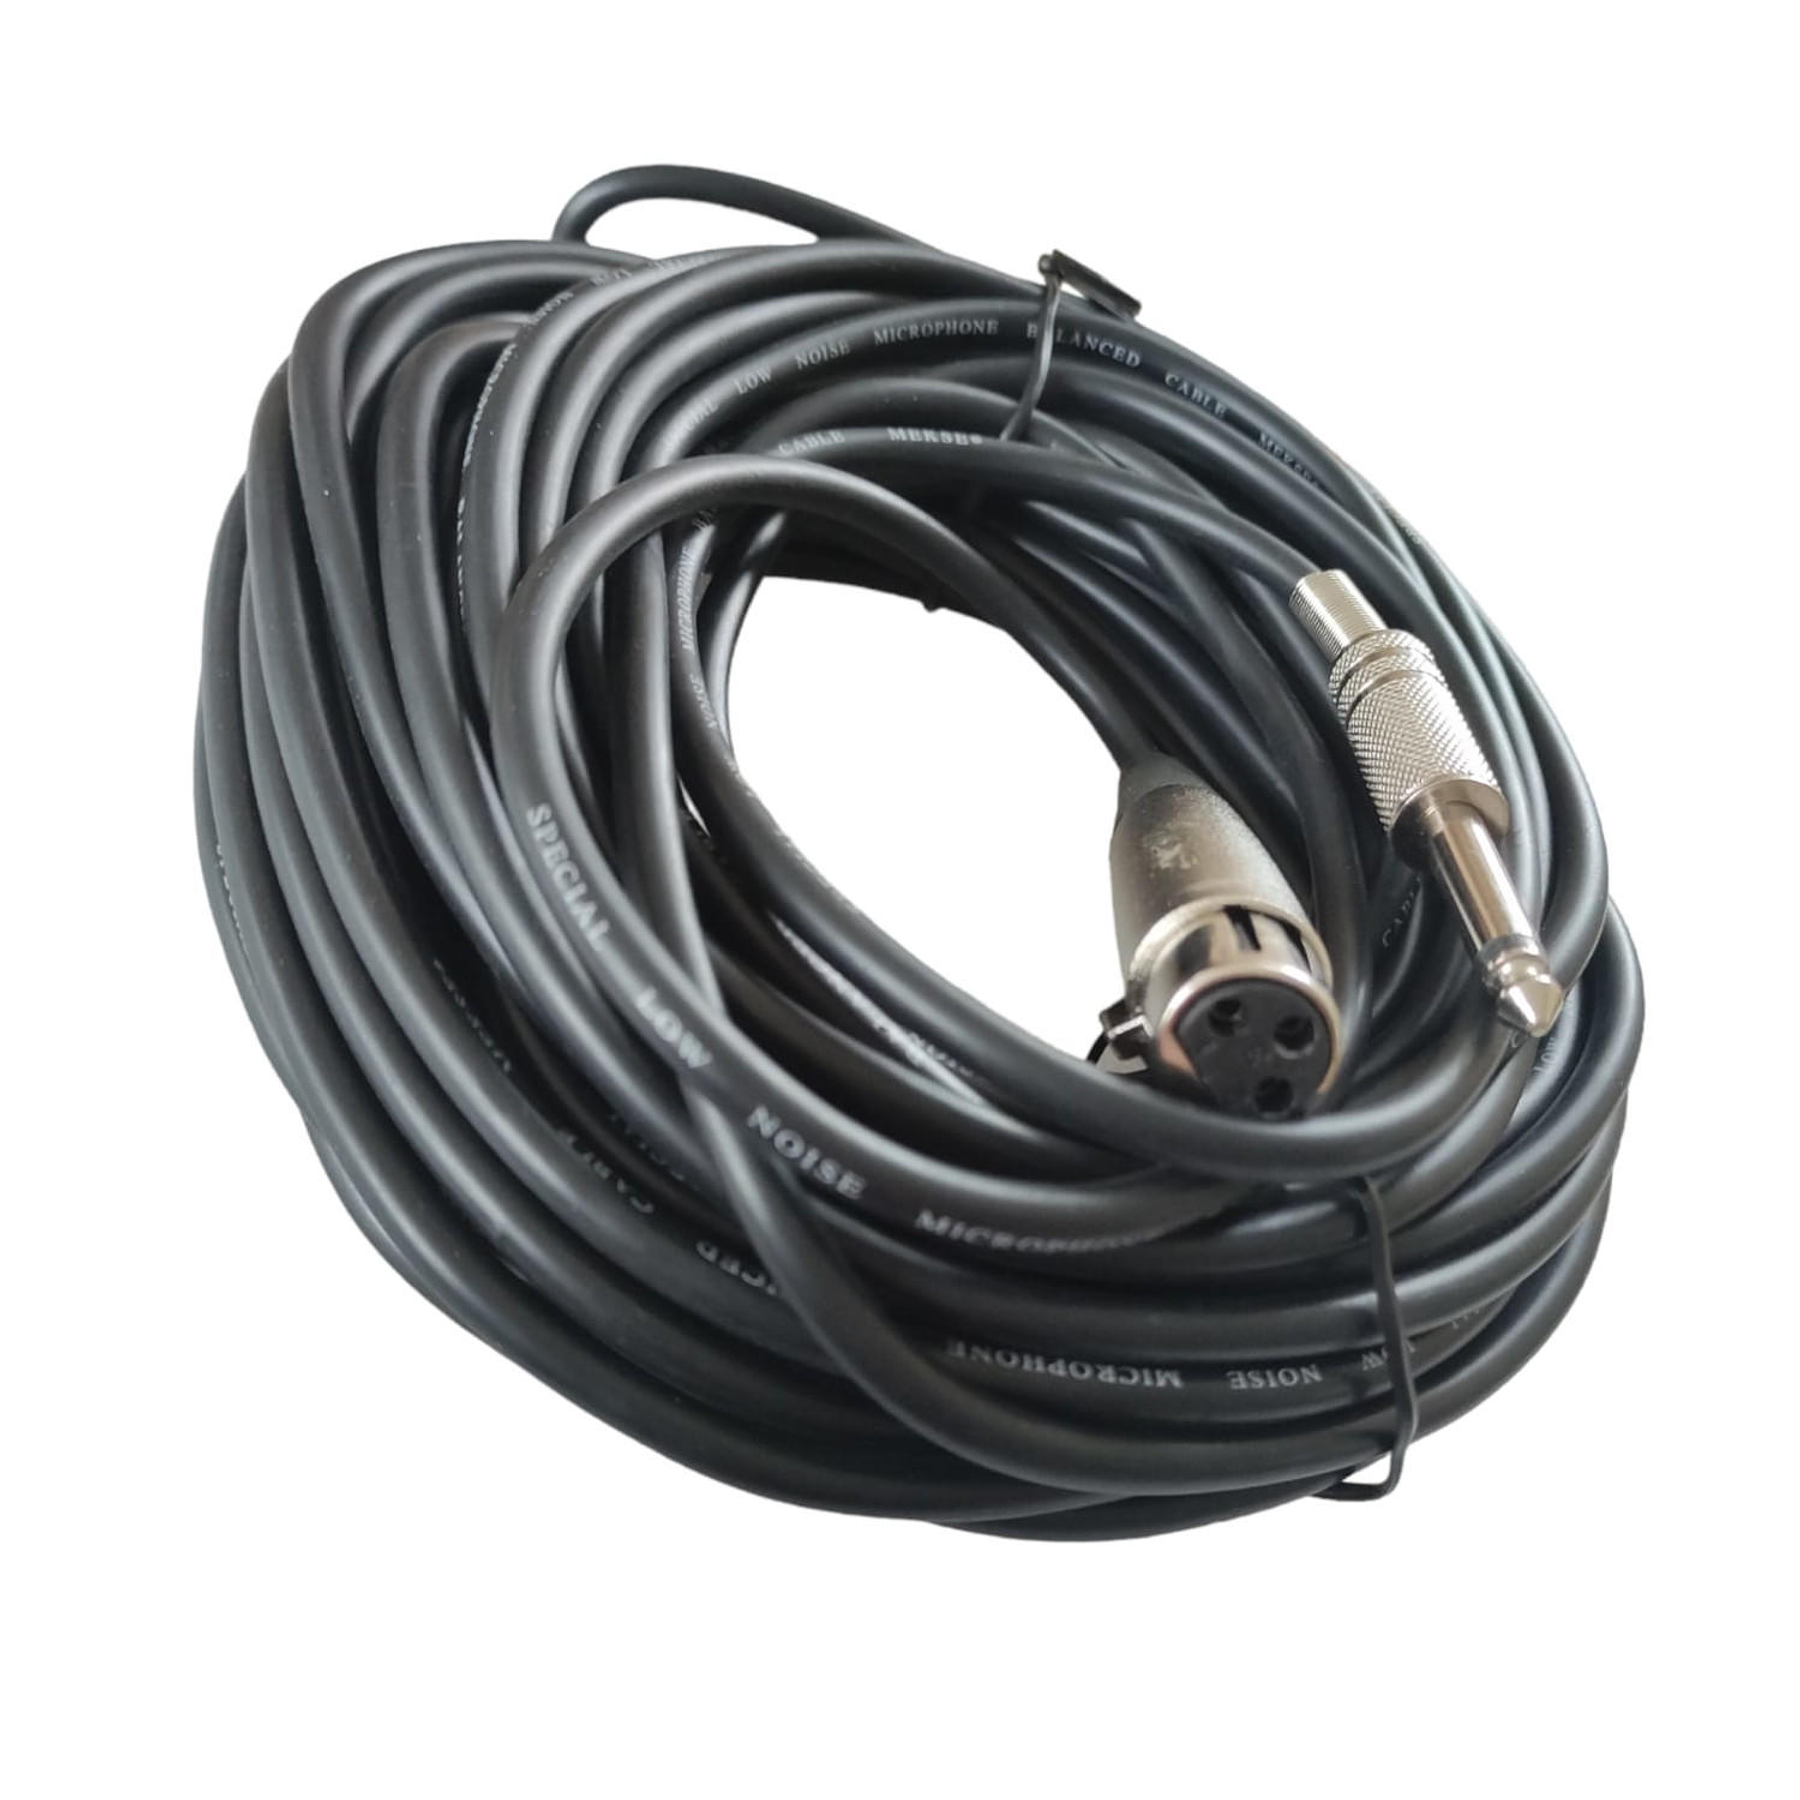 Cable XLR hembra-Plug 6,3mm de 15mt Mekse MC-84/50FT